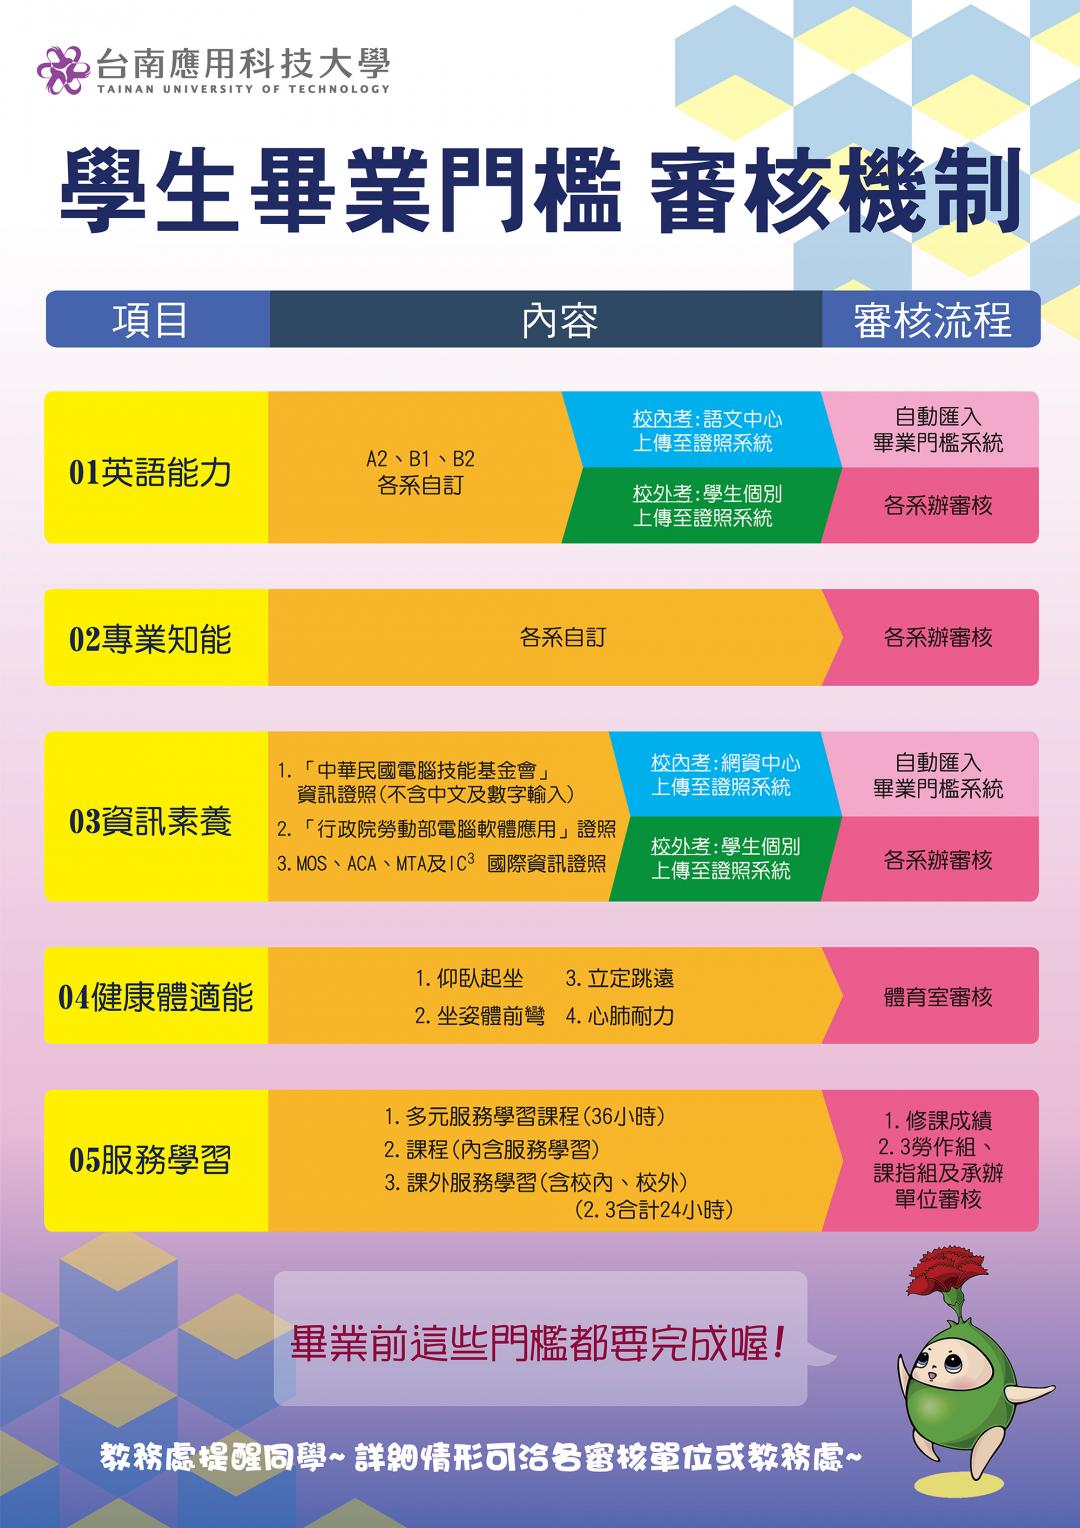 畢業門檻解說圖片1；來源：台南應用科技大學